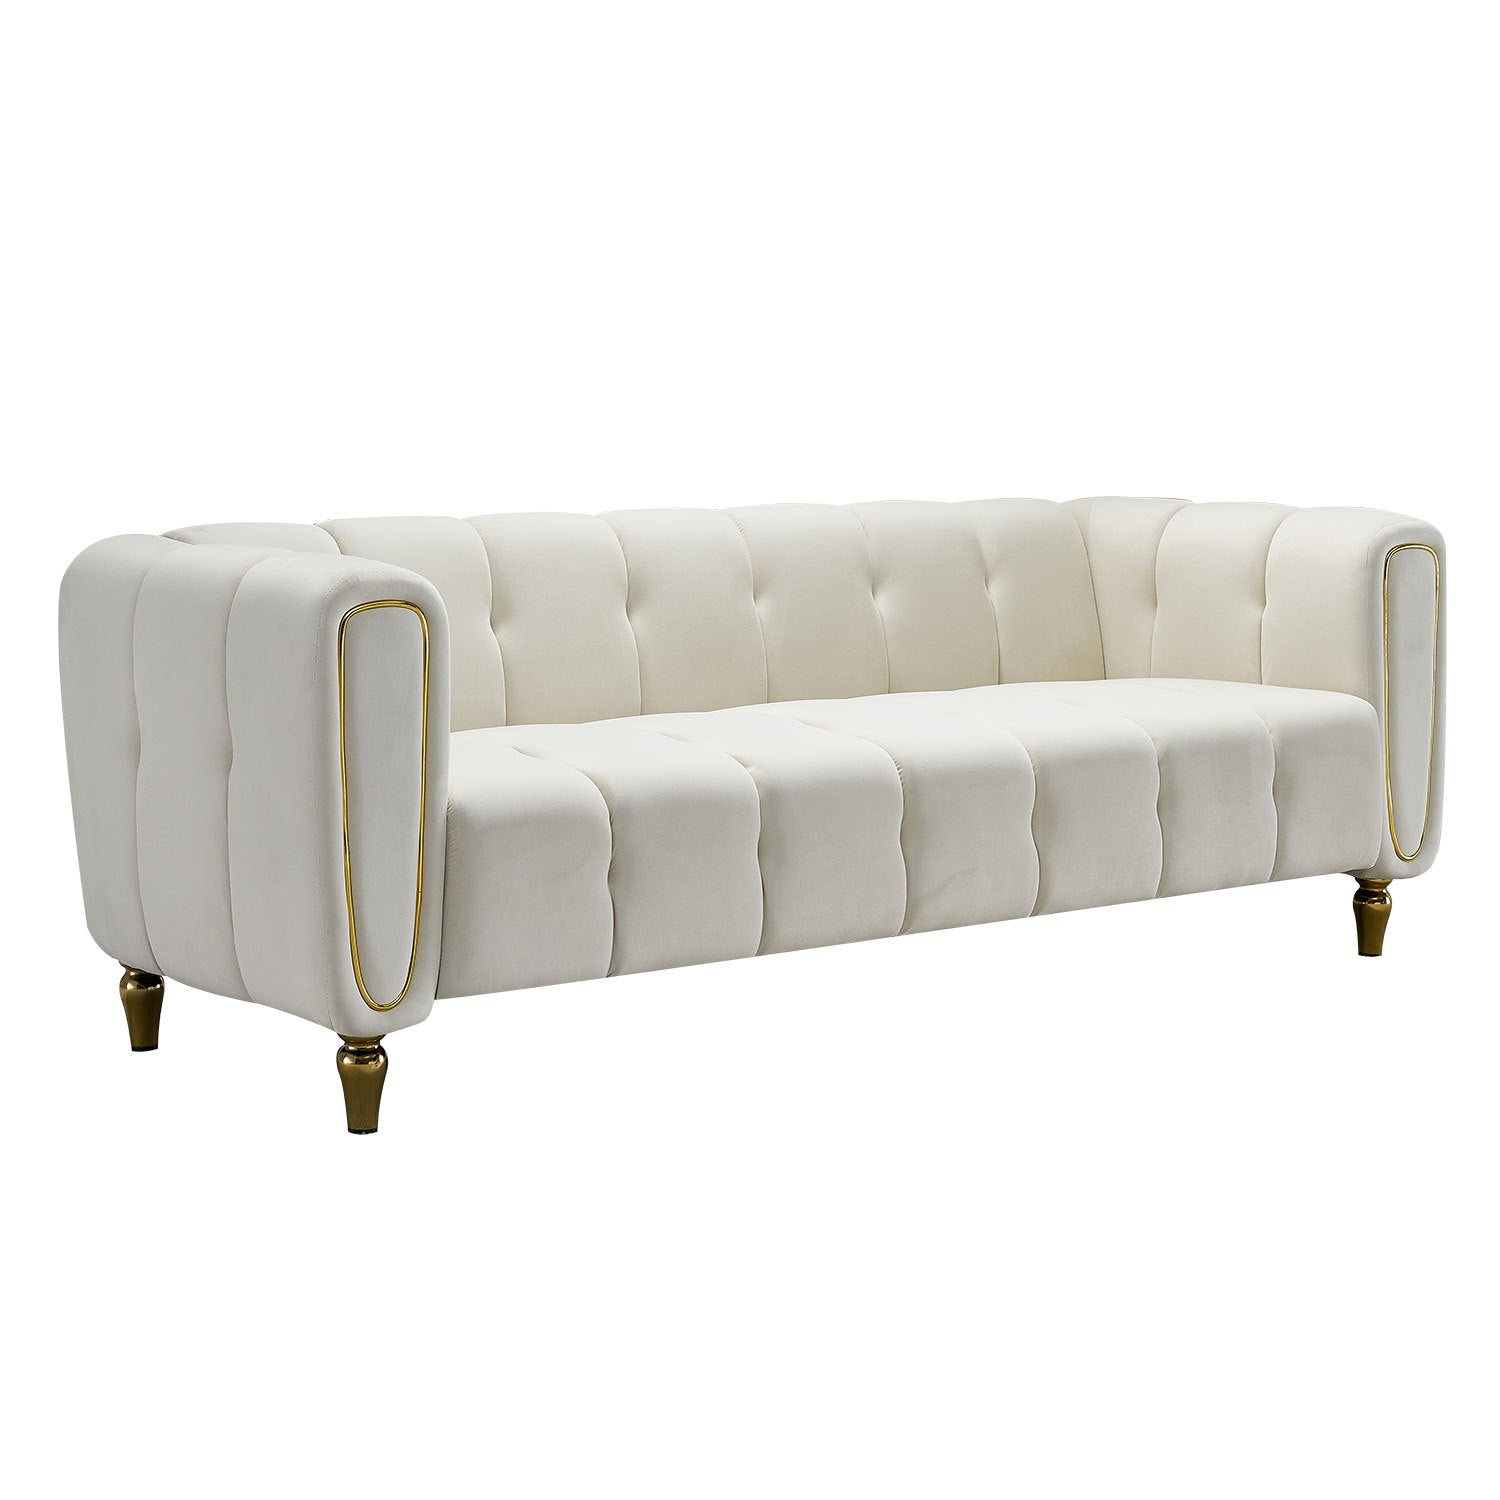 Modern Velvet Sofa 83.07 inch for Living Room Beige beige-velvet-wood-primary living space-tufted